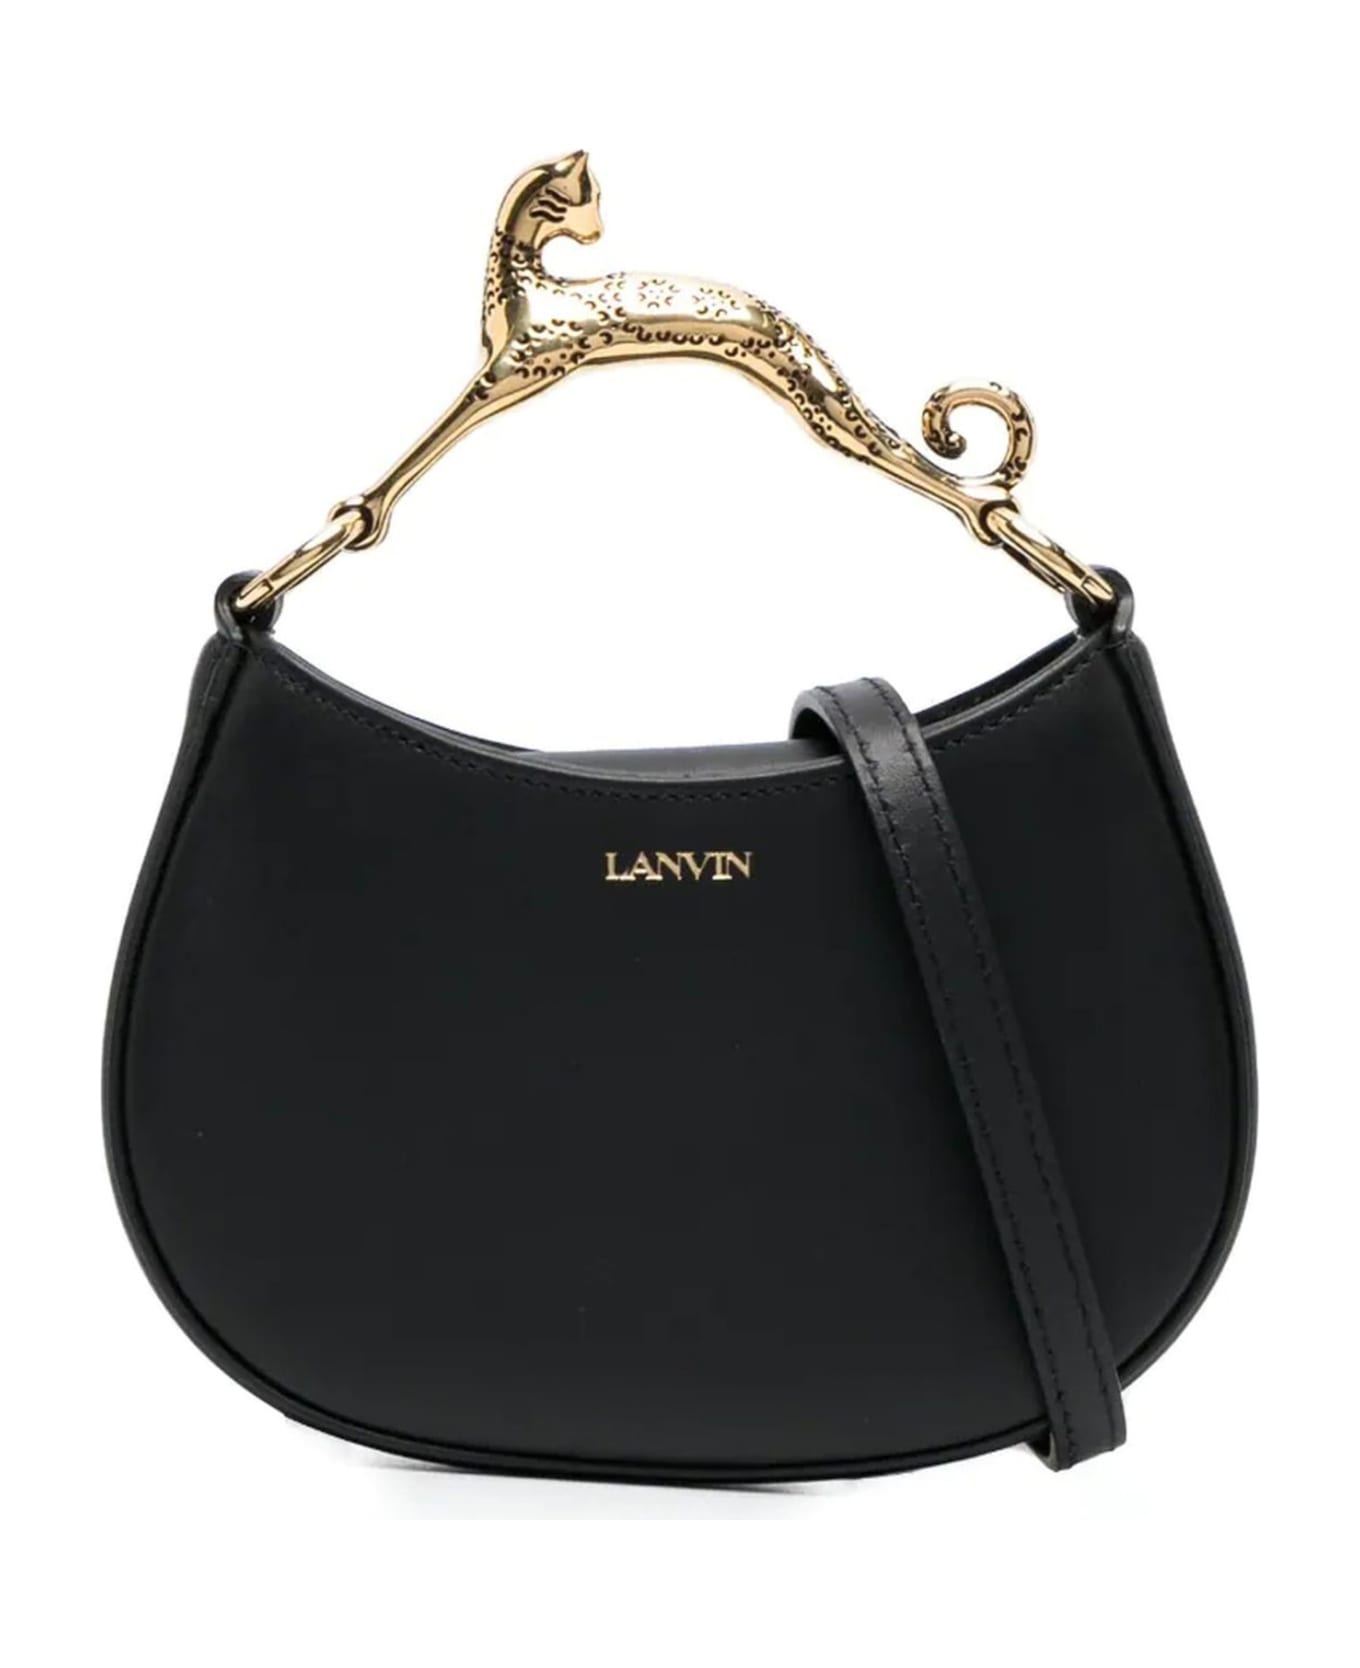 Lanvin Nano Hobo Cat Bag In Black Leather - Black